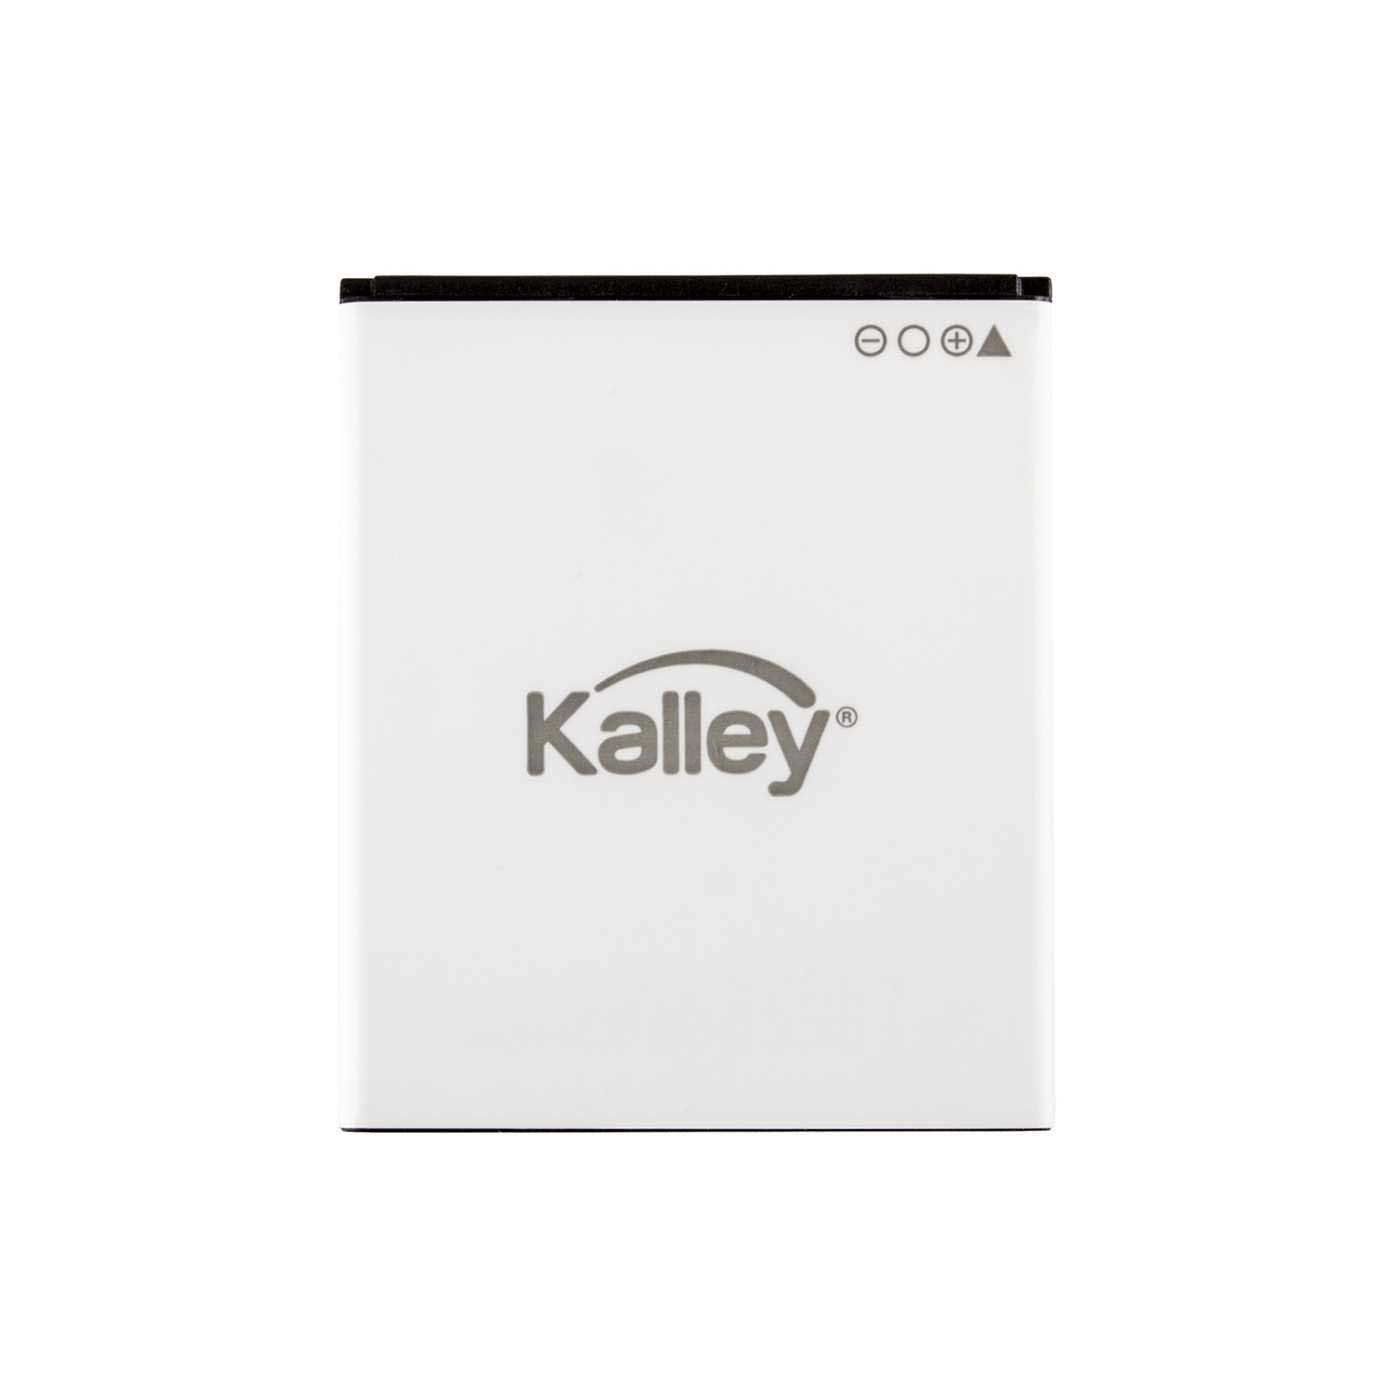 Batería KALLEY Element 4 Plus